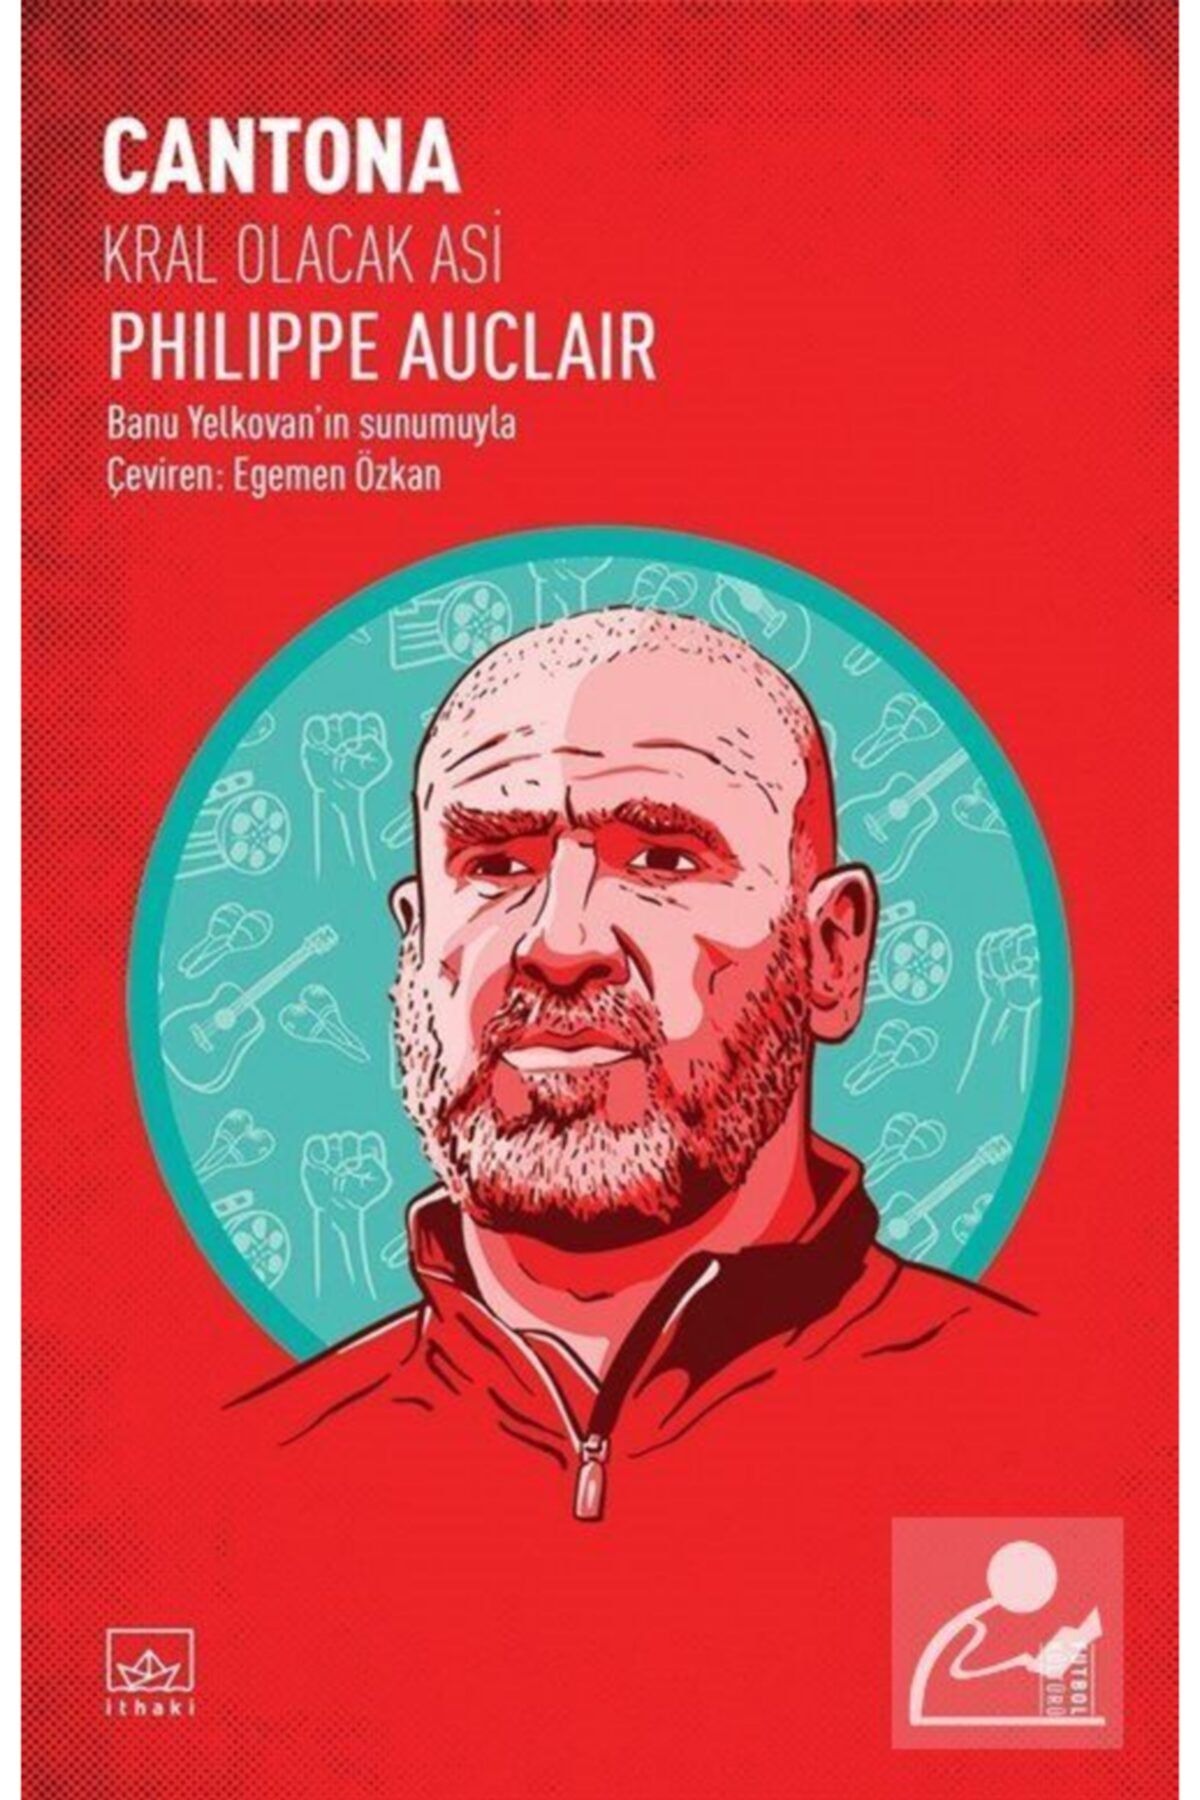 İthaki Yayınları Cantona: Kral Olacak Asi - Philippe Auclair -